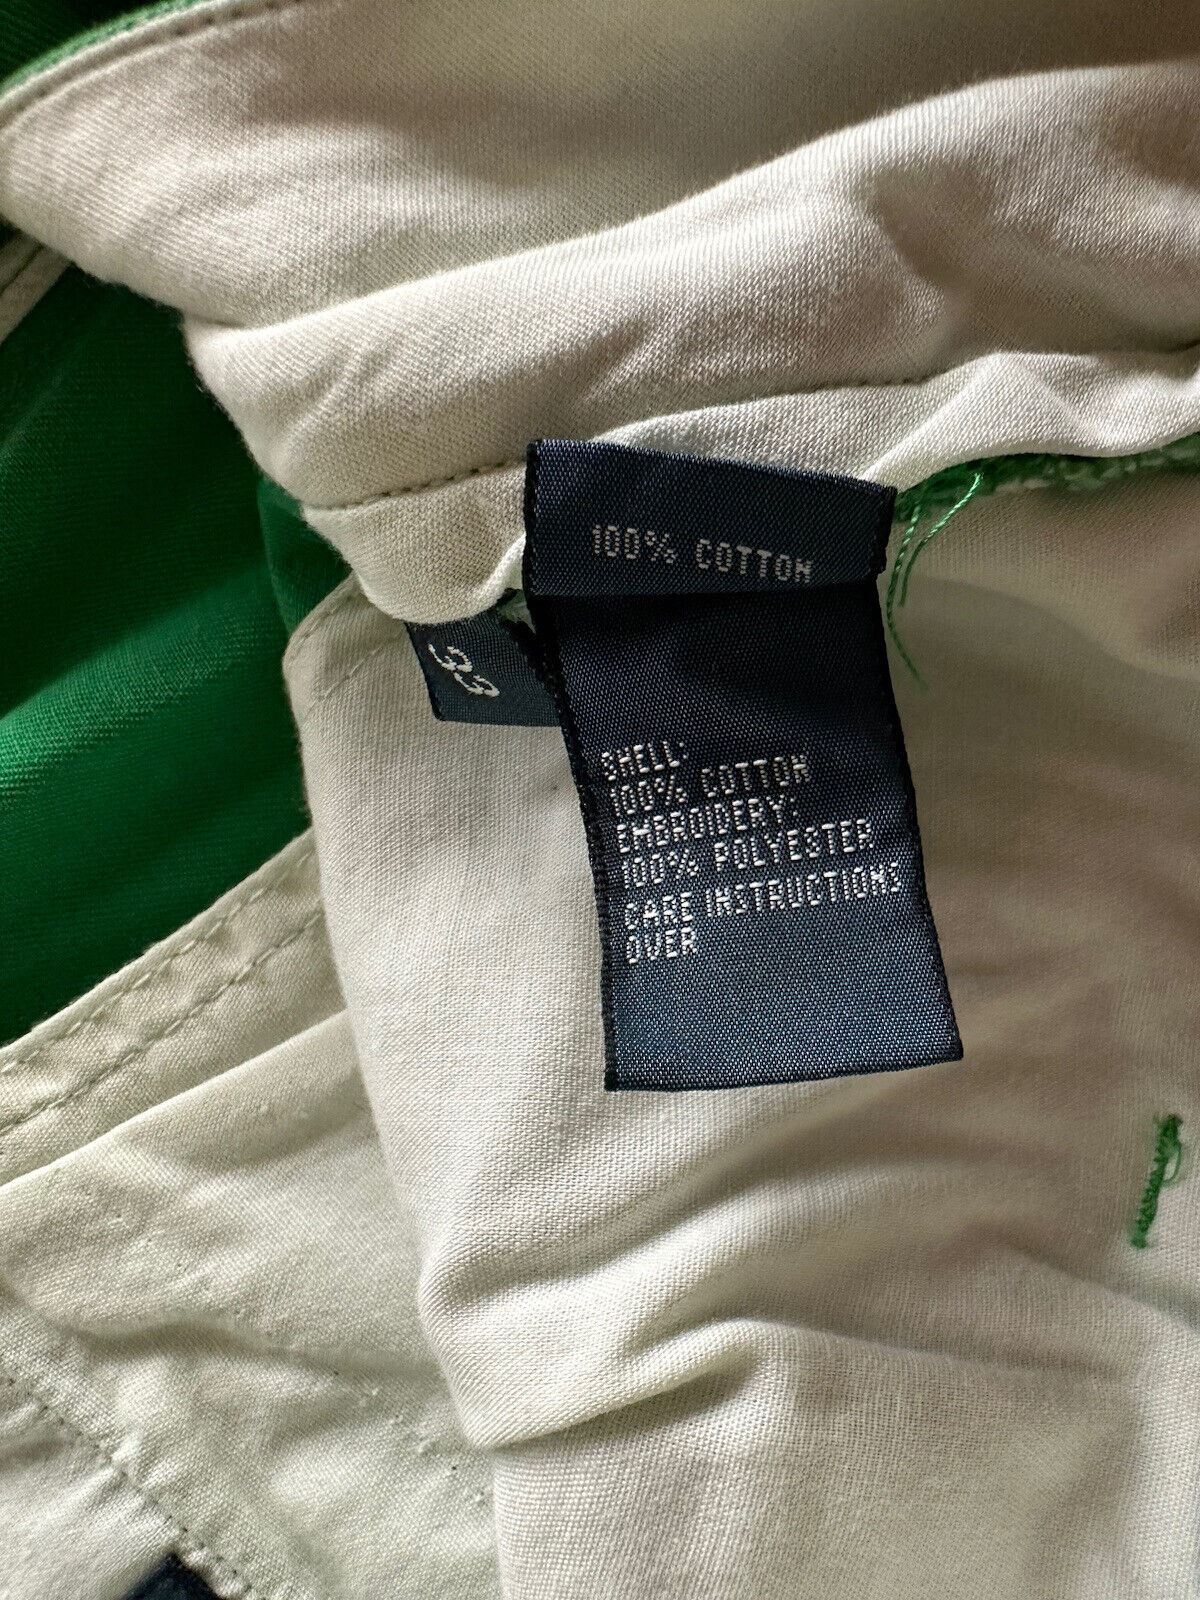 Polo Ralph Lauren Herren-Shorts mit klassischer Passform, grün, Größe 33 US 